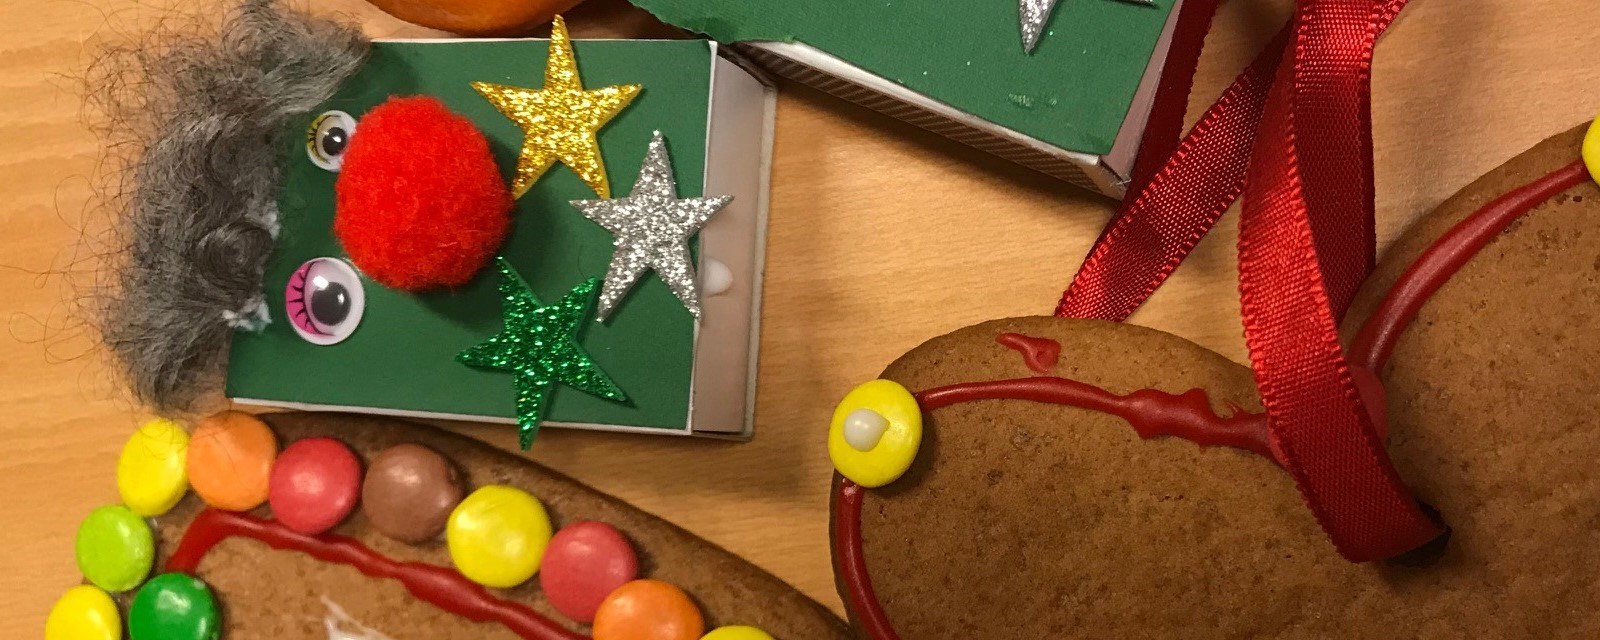 Saltdal Røde Kors Omsorg sin julefest ble vellykket, og barna fikk blant annet lage julepynt.